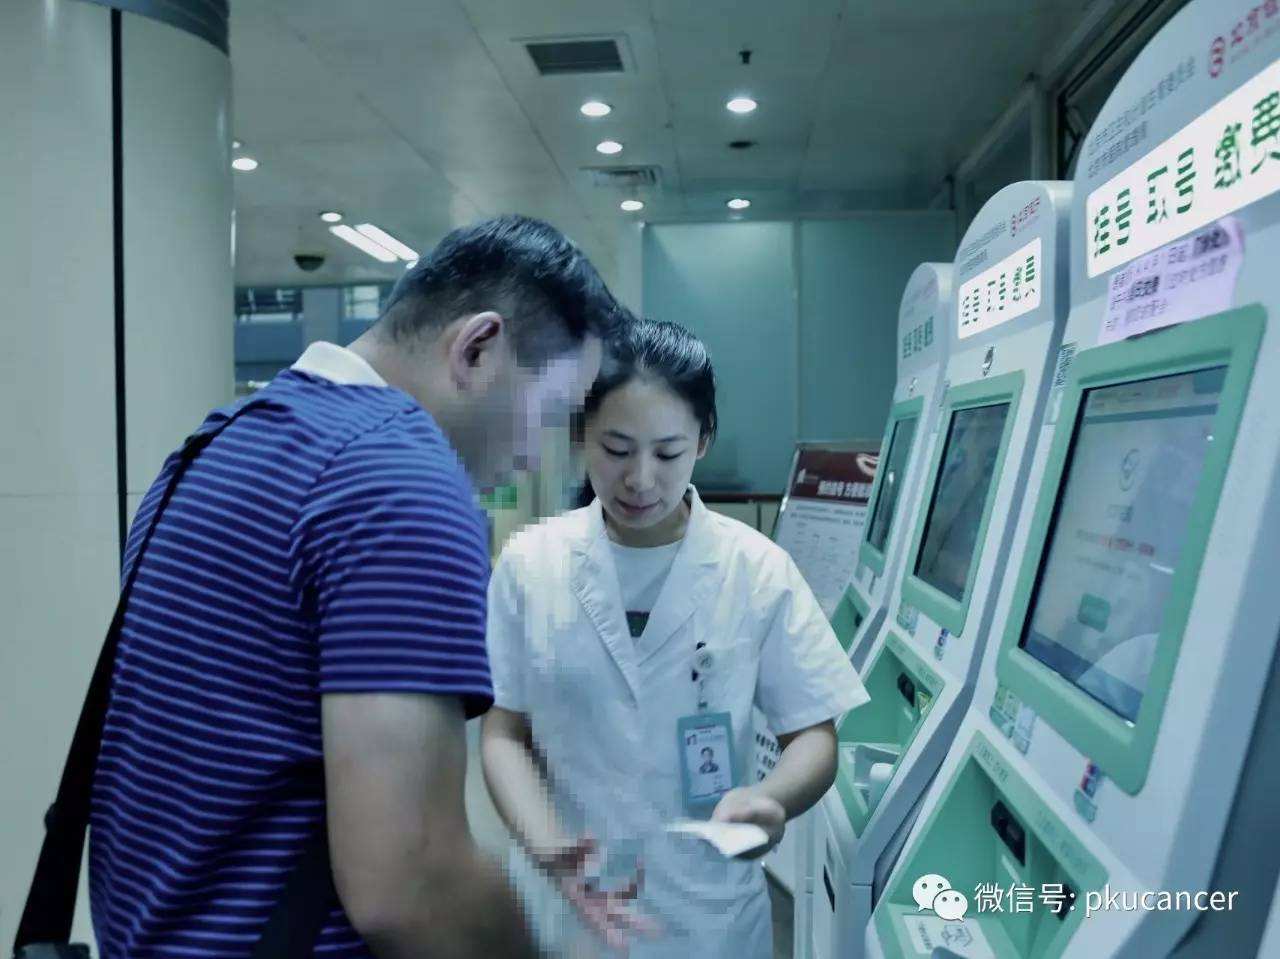 包含北京大学肿瘤医院全天在线急您所急的词条